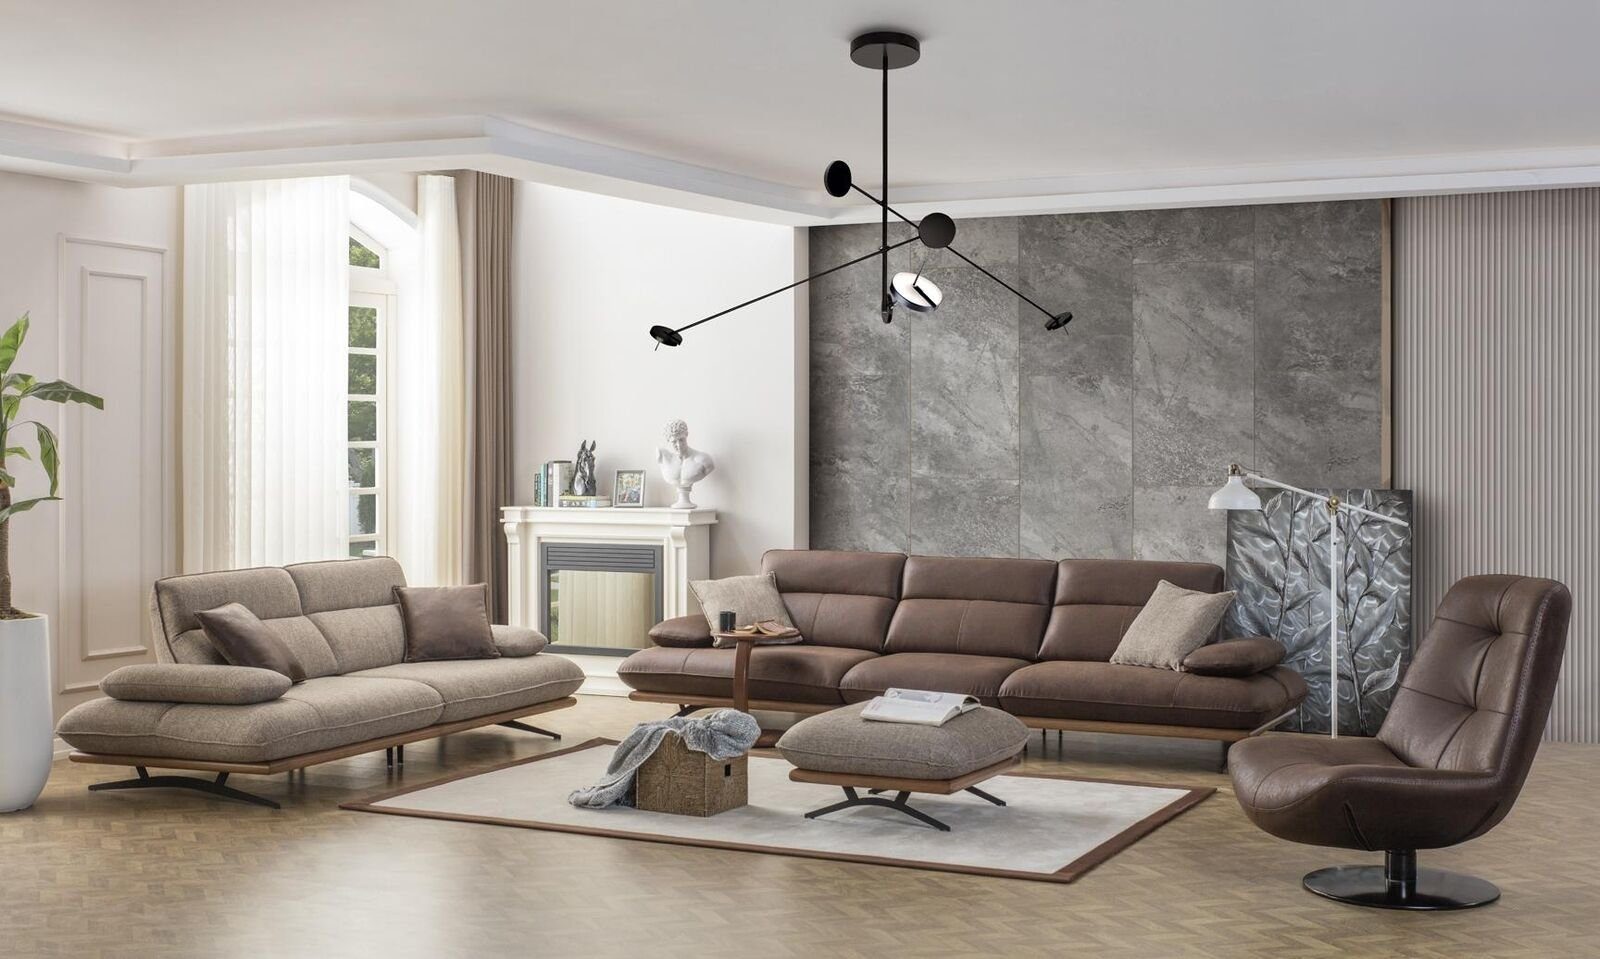 JVmoebel Sofa Dreisitzer Sitzer Sofa 3 Sitz Modern, Stoff Wohnzimmer Luxus Teile Sofas Grau 1